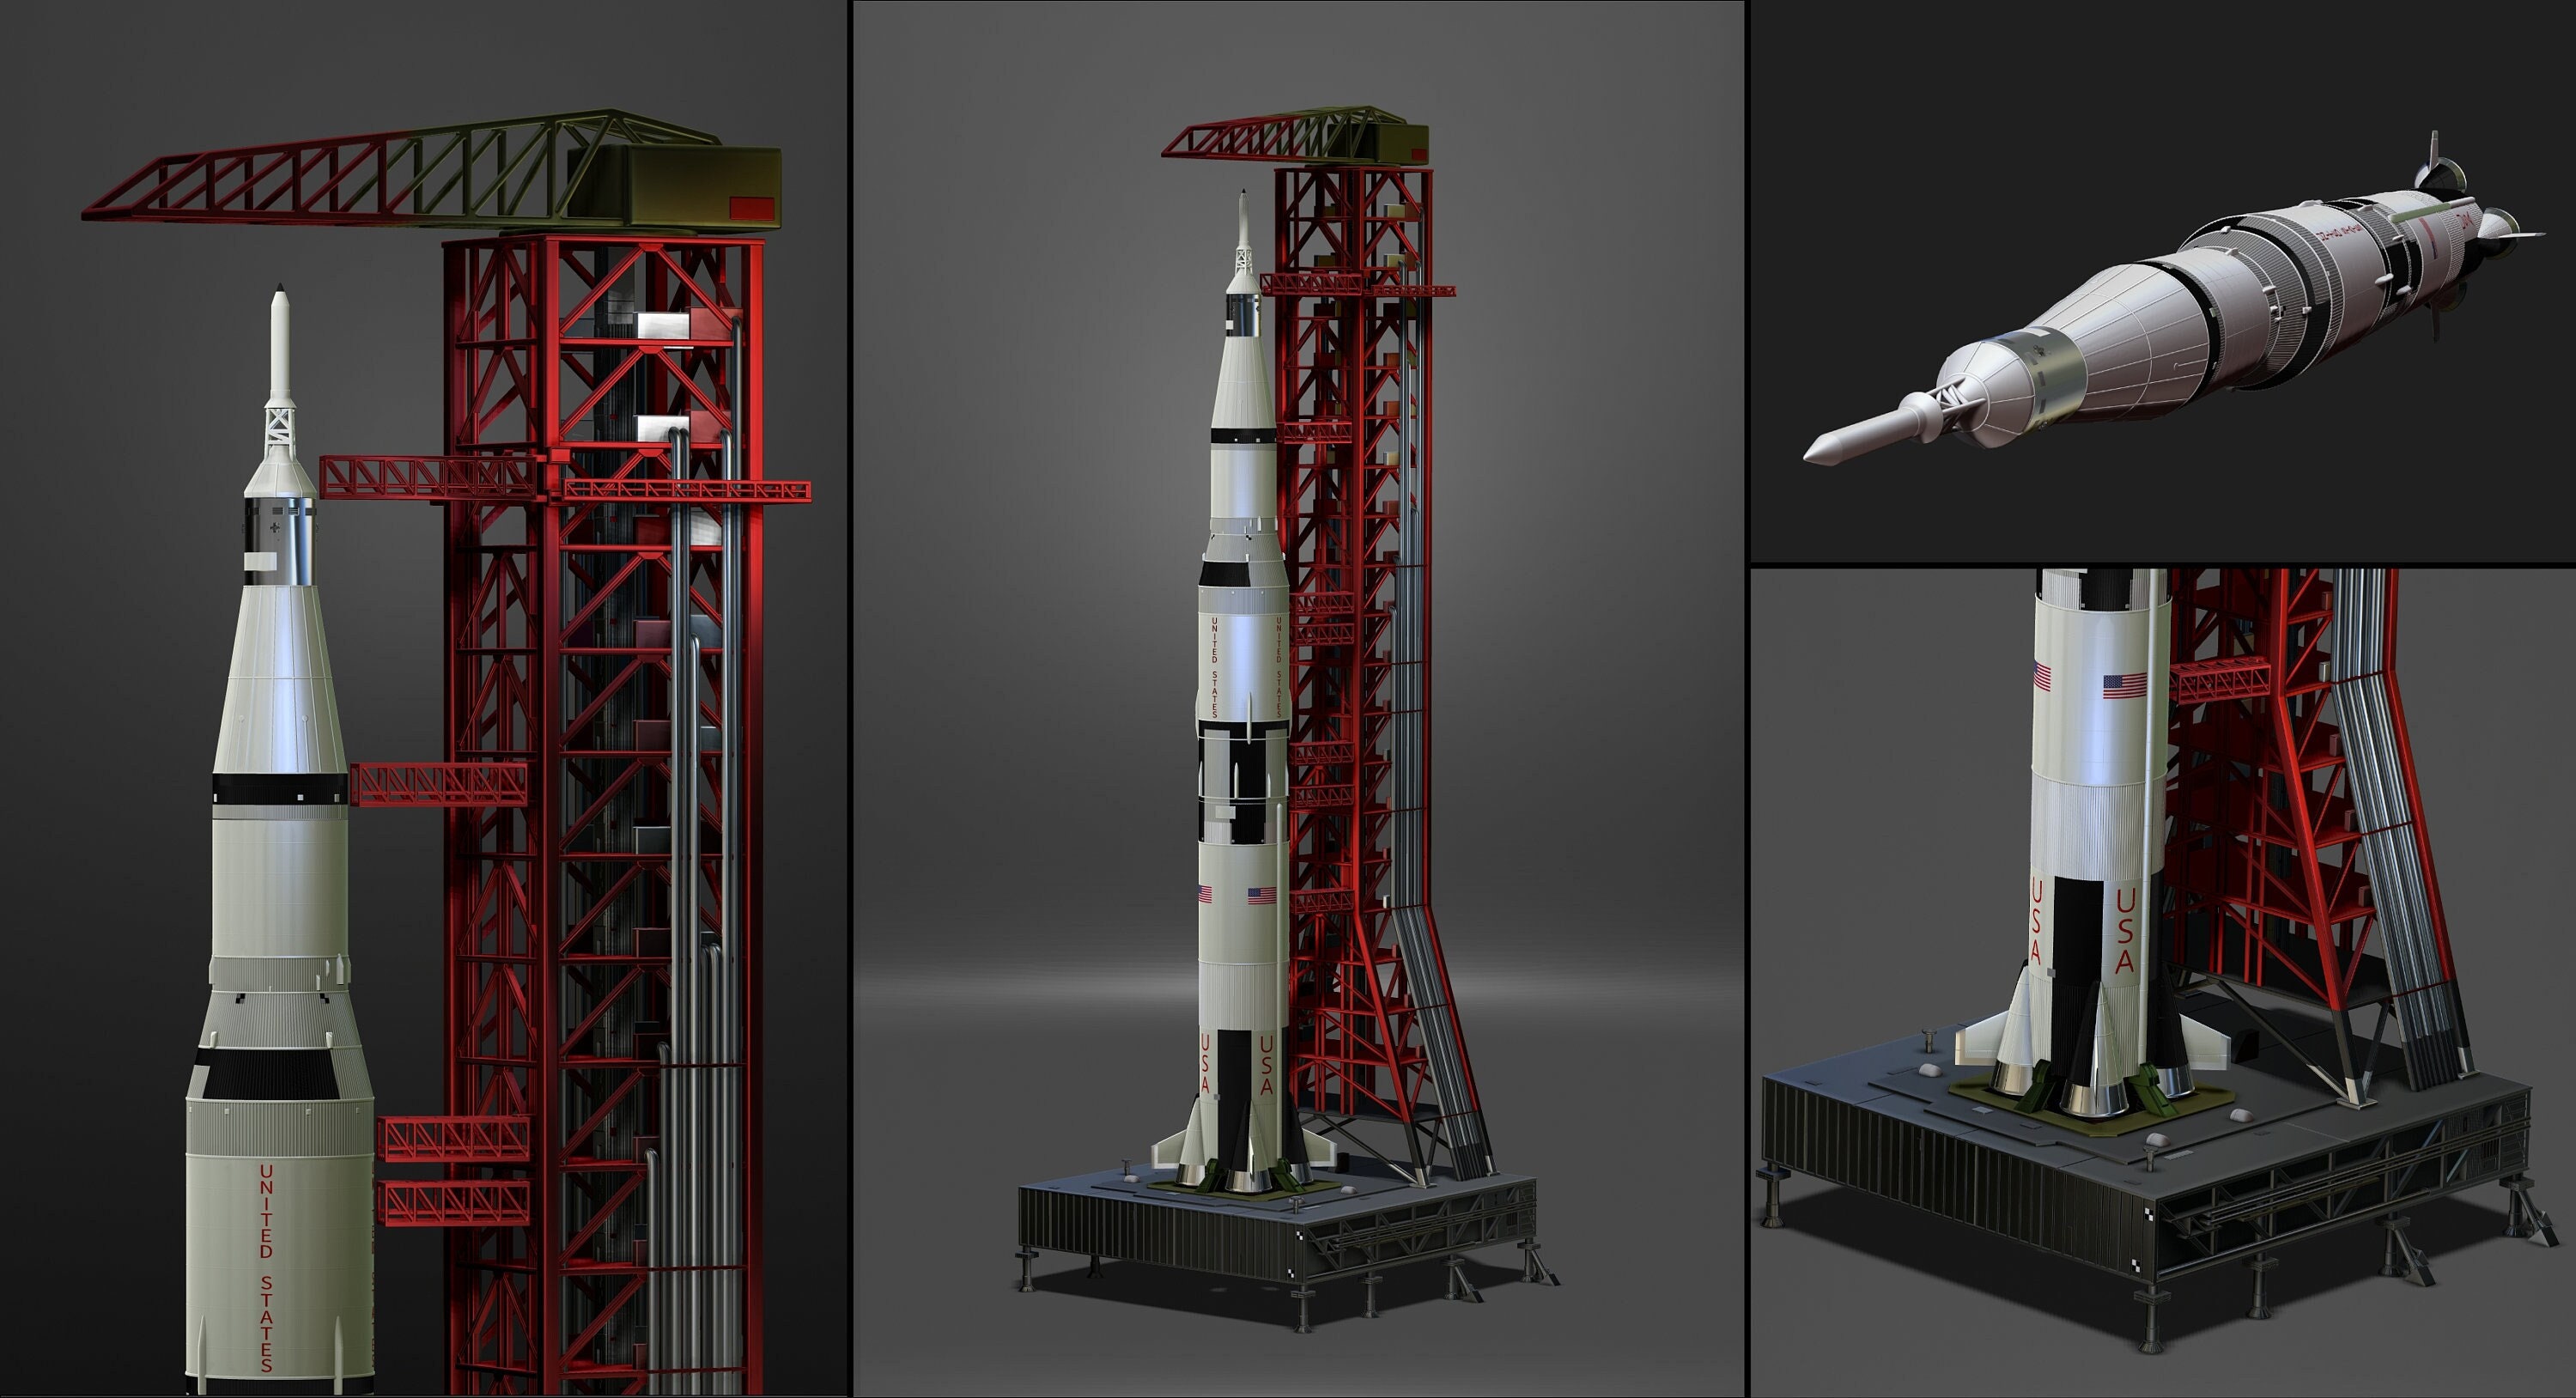 3D Puzzle Apollo Saturn V Rocket, 3D Vehicles, 3D Puzzles, Products